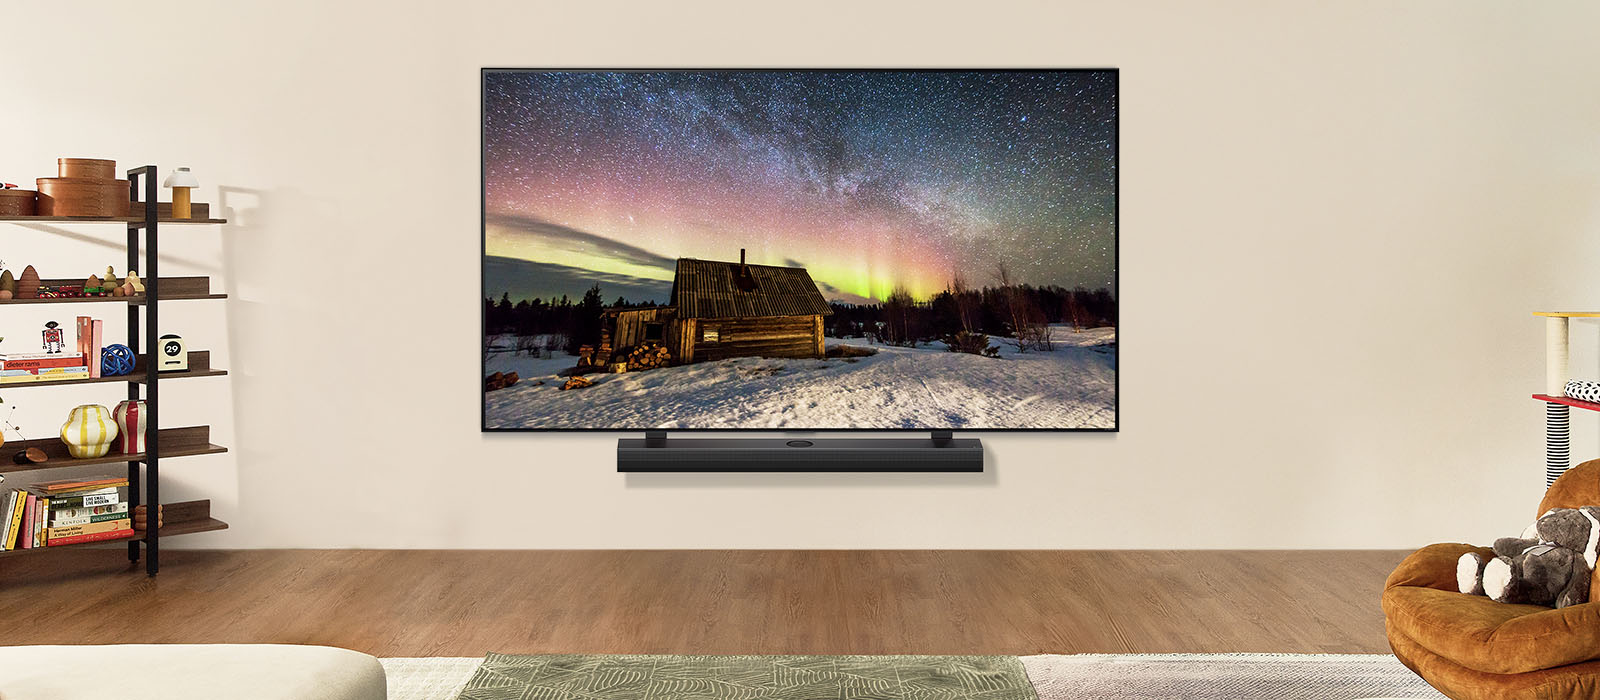 Изображение телевизора LG TV и звуковой панели LG Soundbar в современном жилом пространстве в дневное время. Изображение северного сияния отображается с идеальными уровнями яркости.